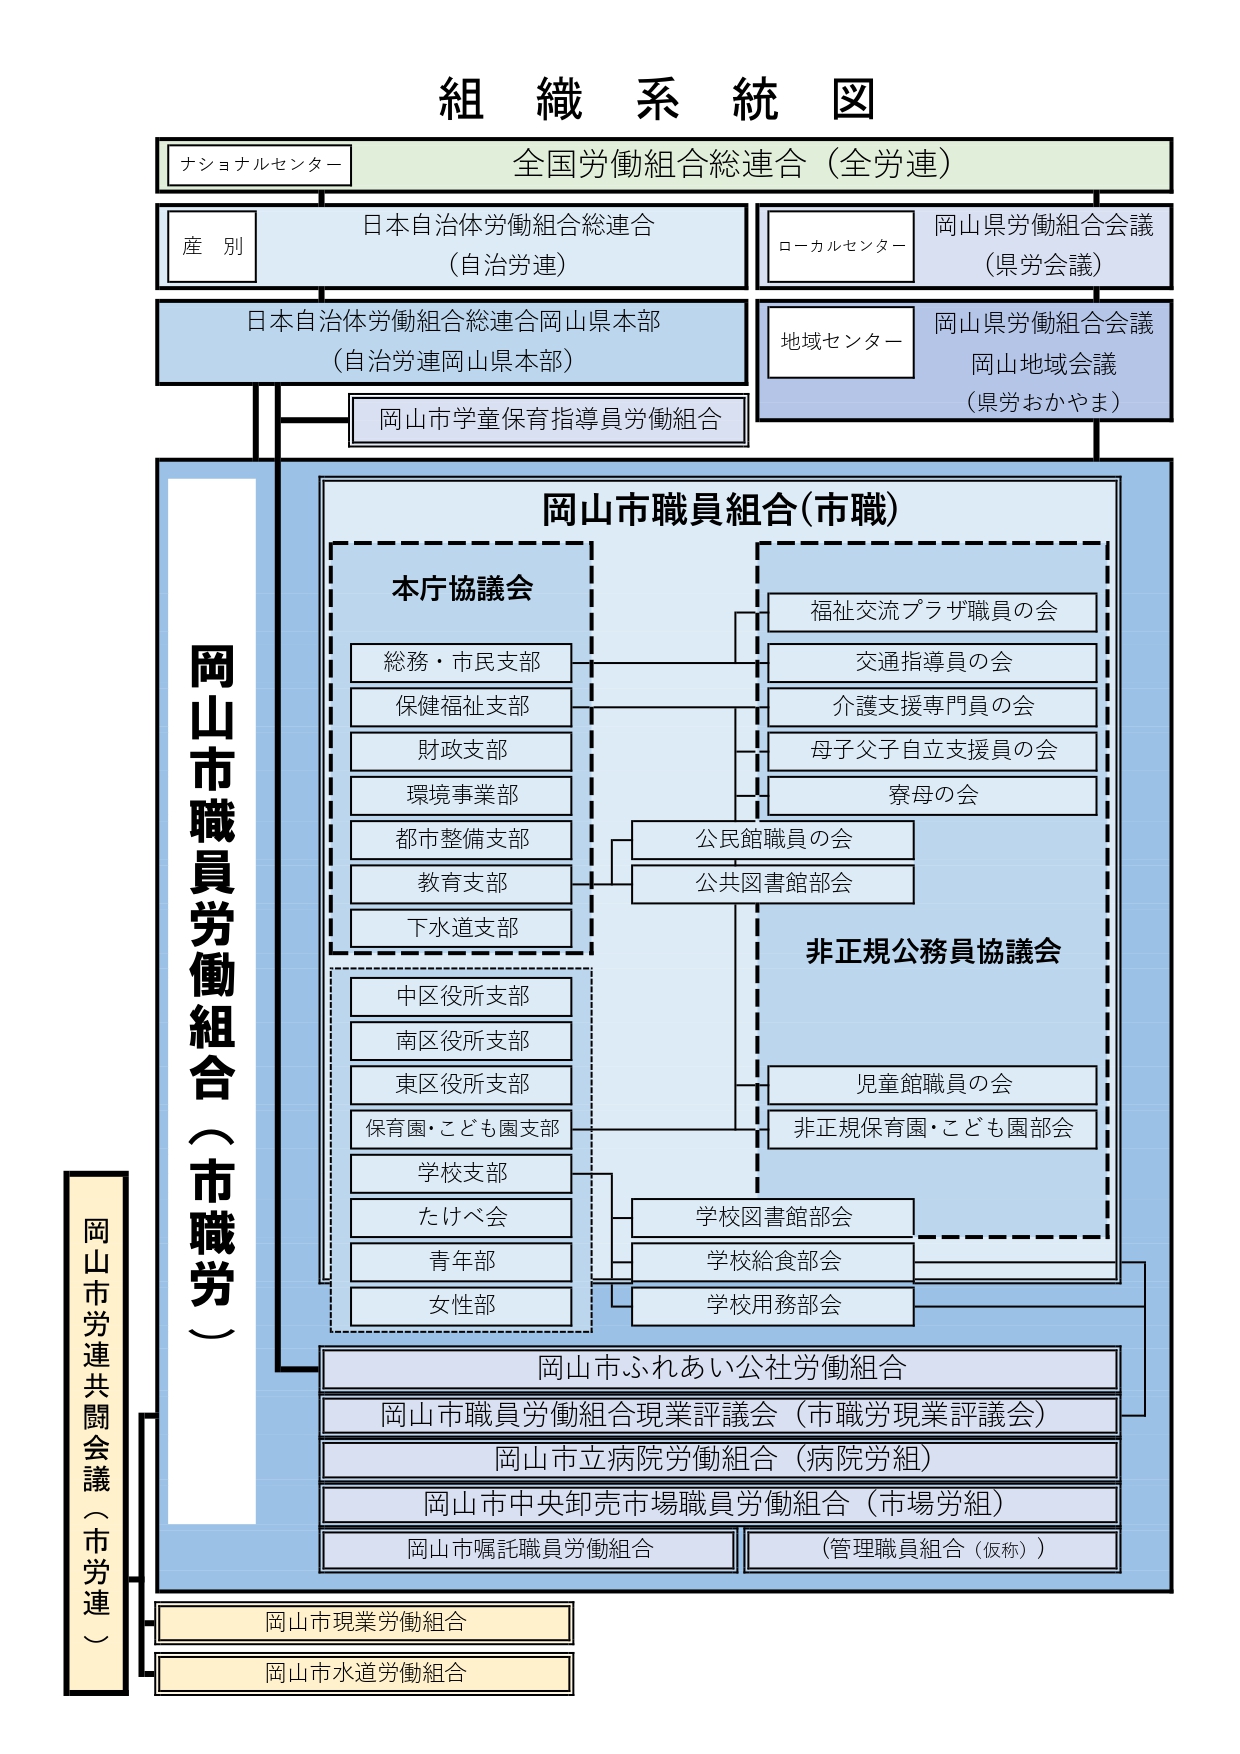 組織系統図(JPEG)